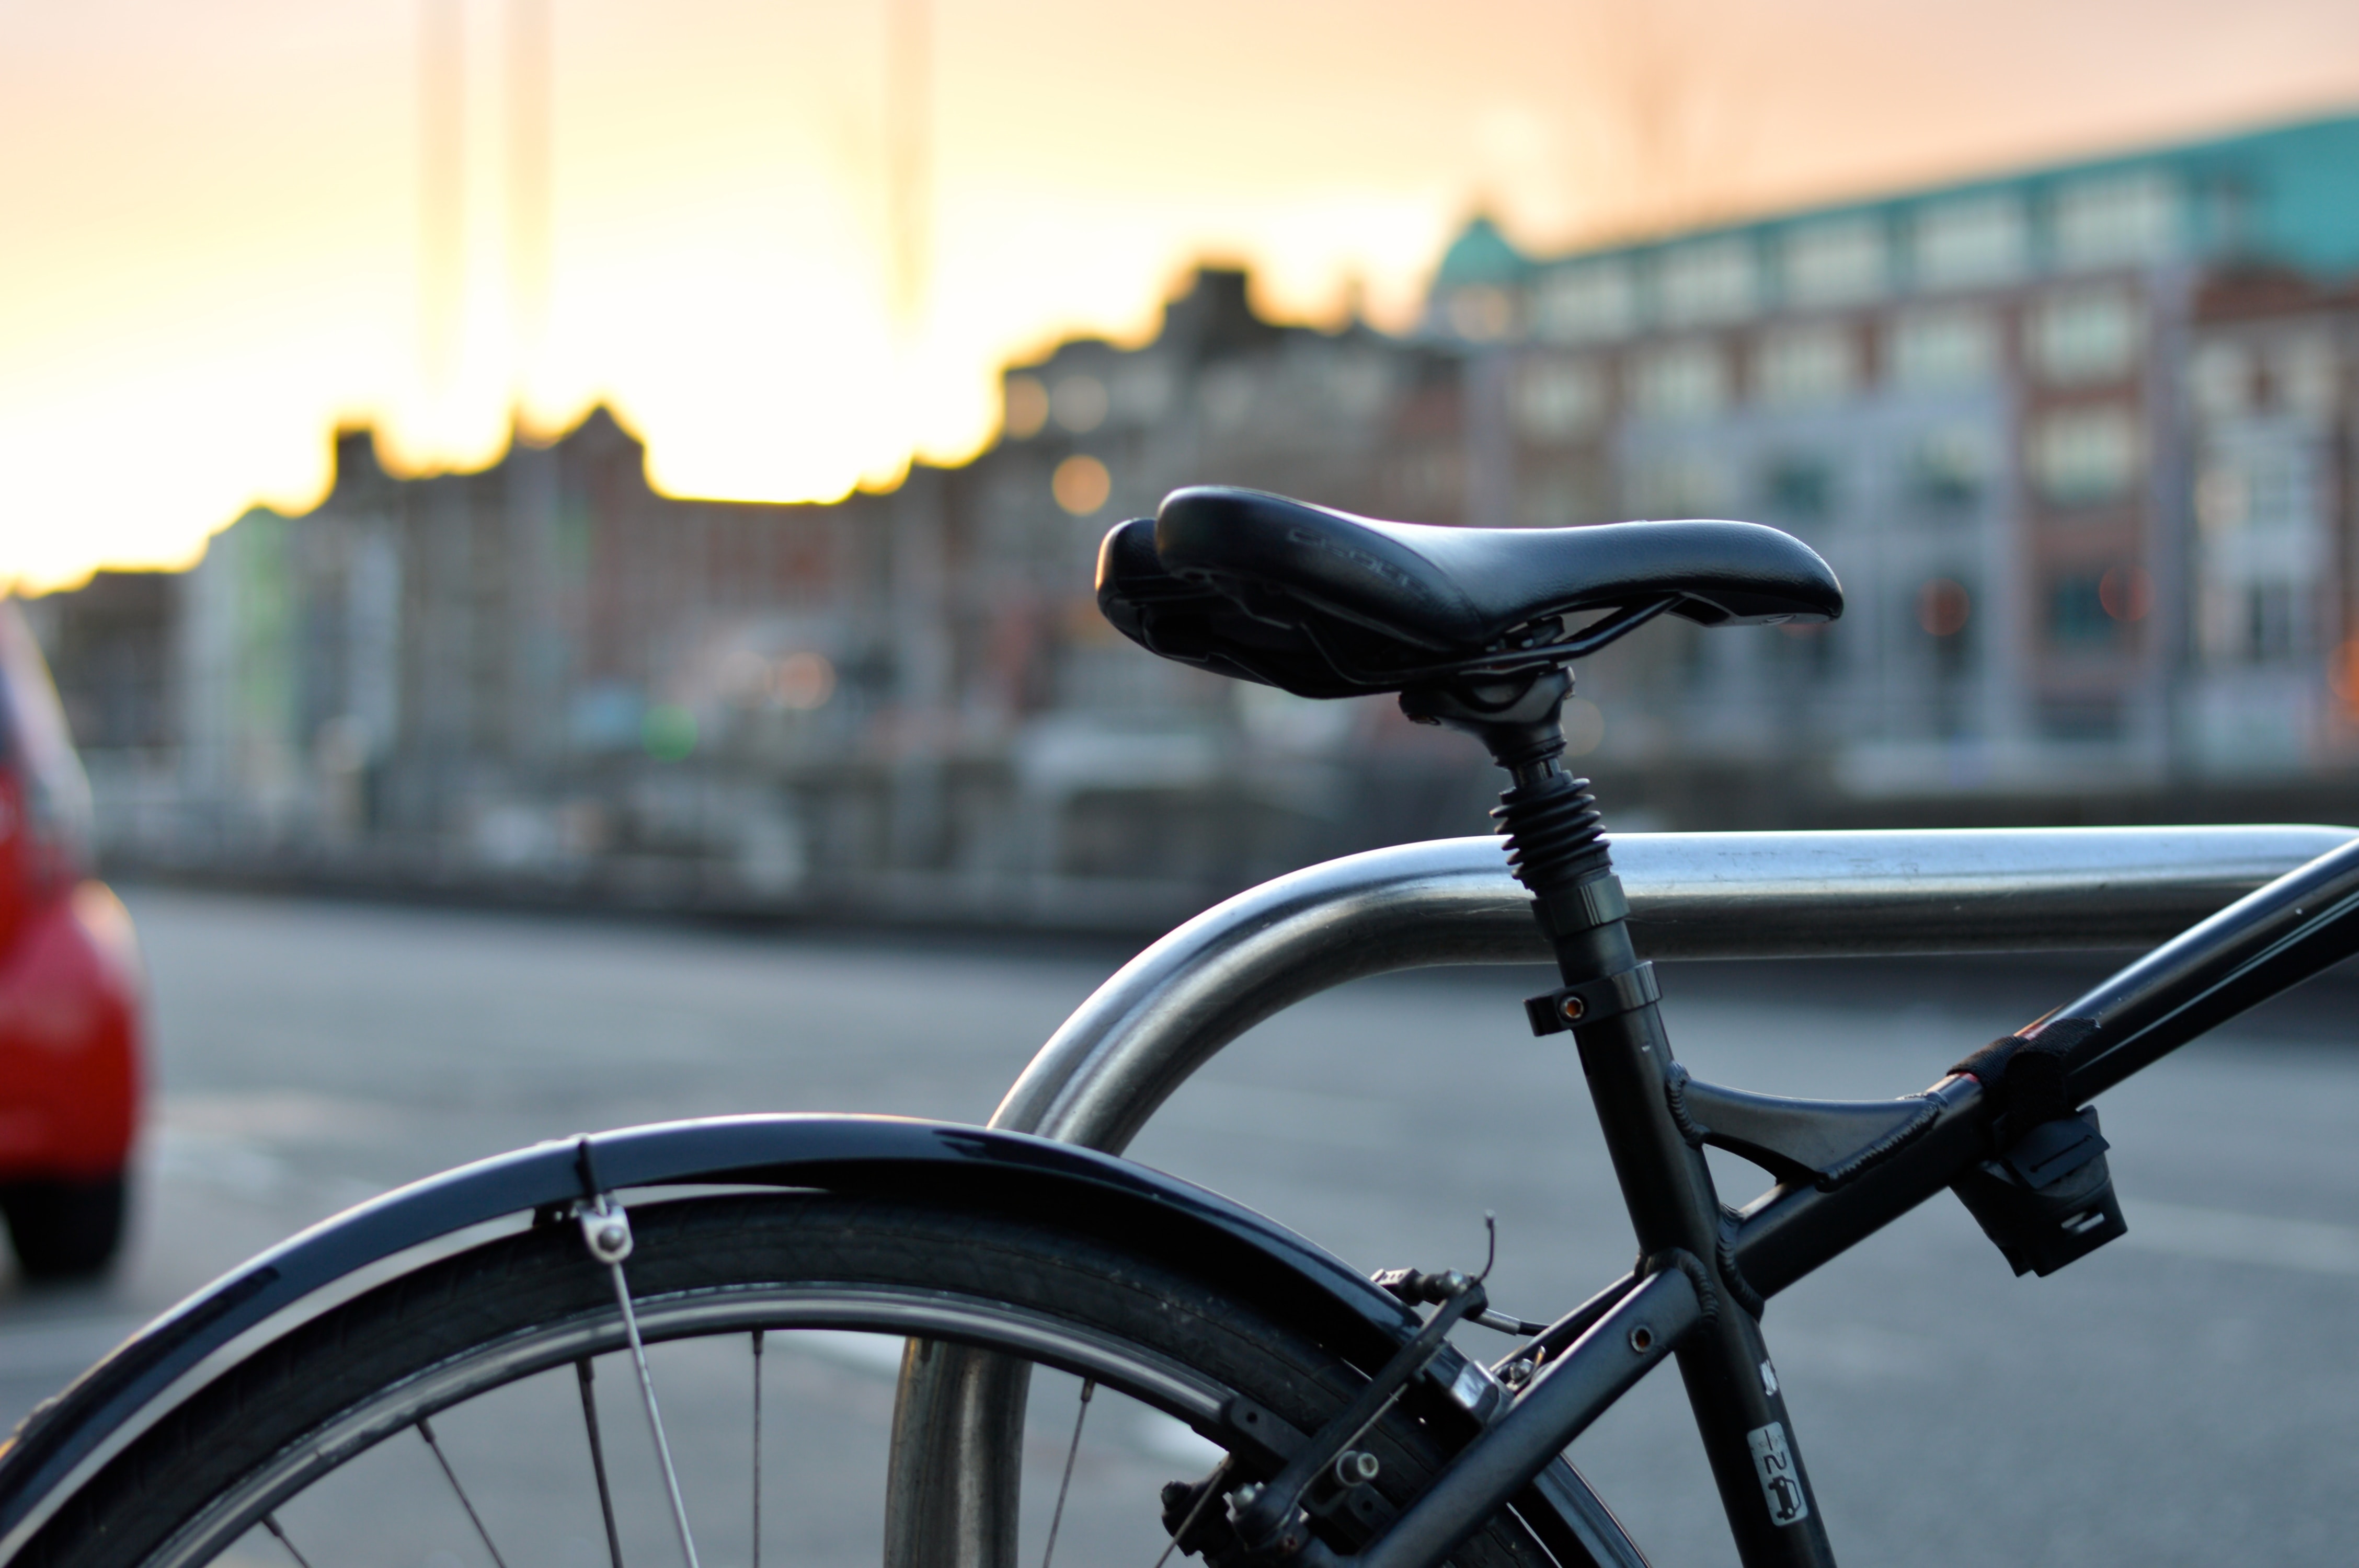 進口電動機器腳踏車主要特性認定原則